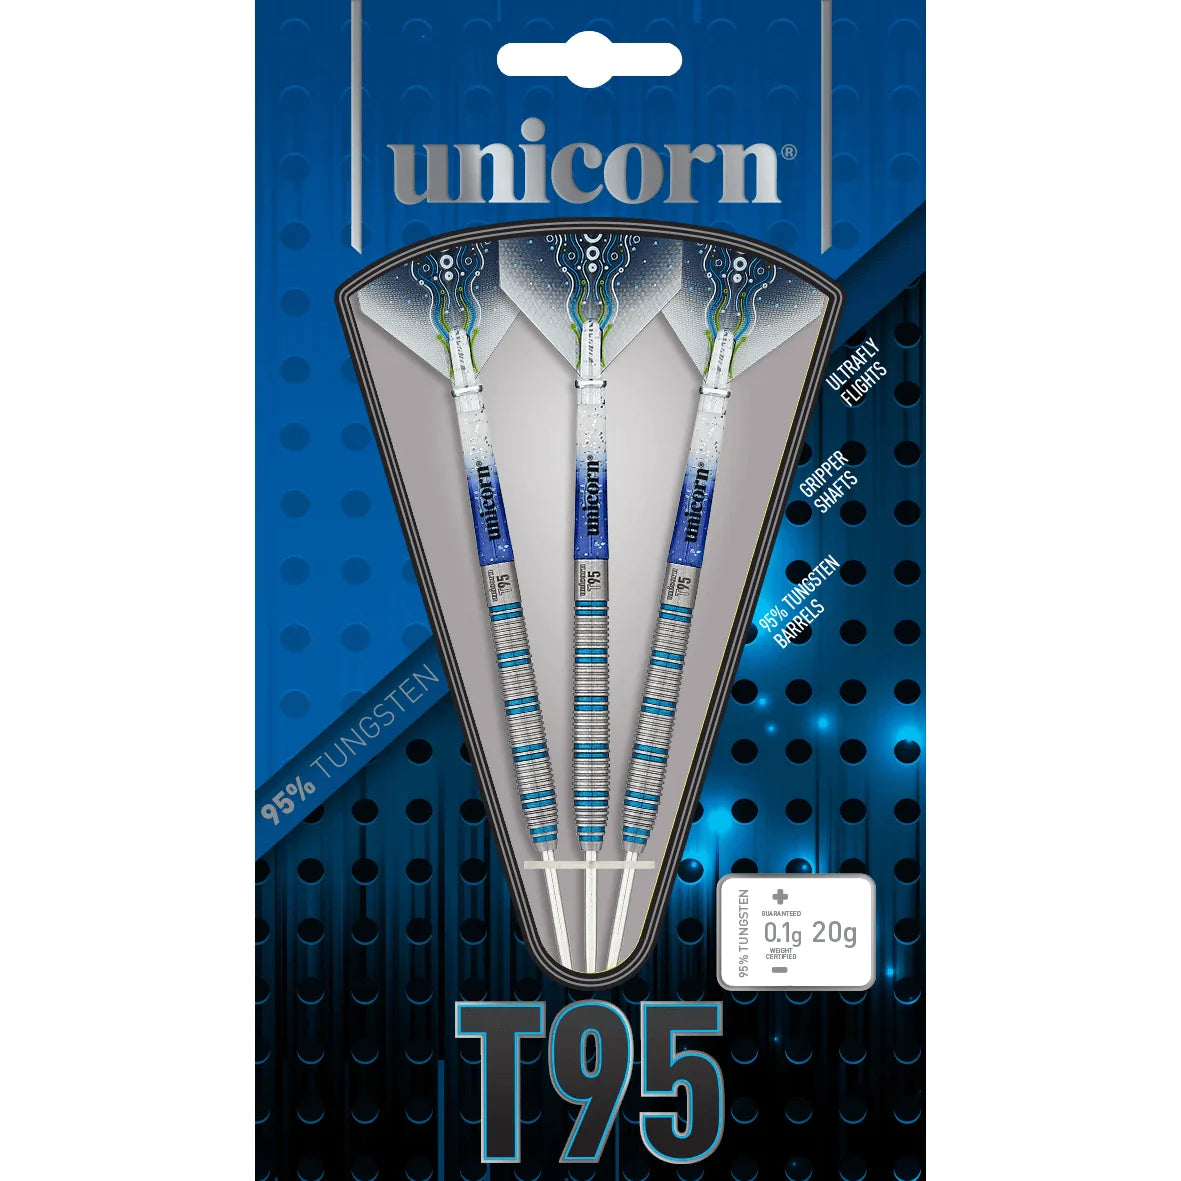 Unicorn T95 Core XL Blue 23g Darts